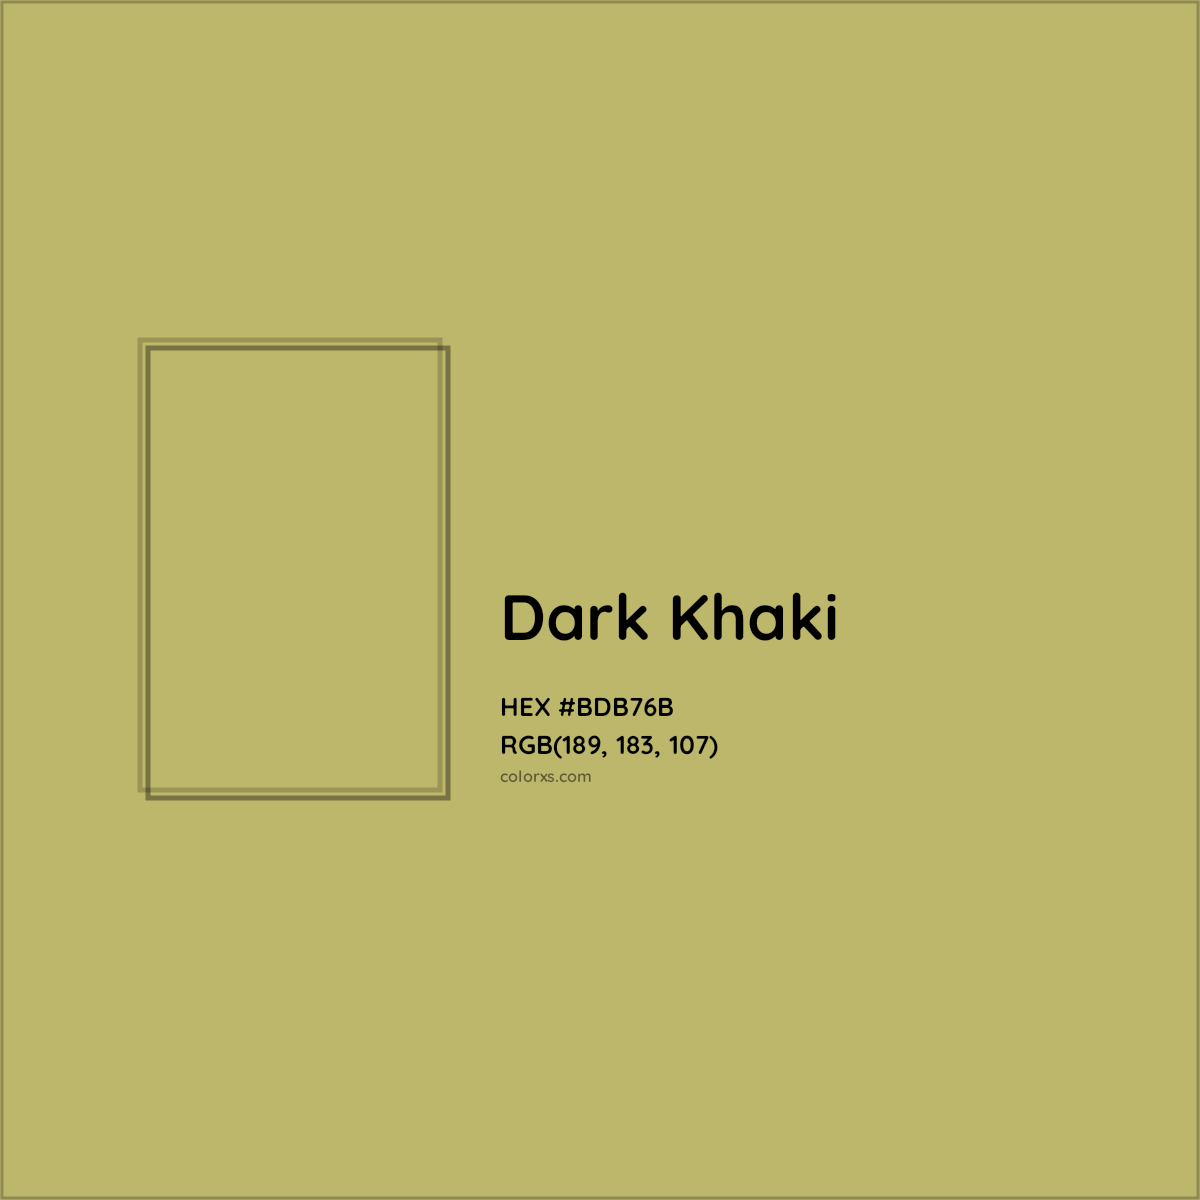 HEX #BDB76B Dark Khaki Color - Color Code